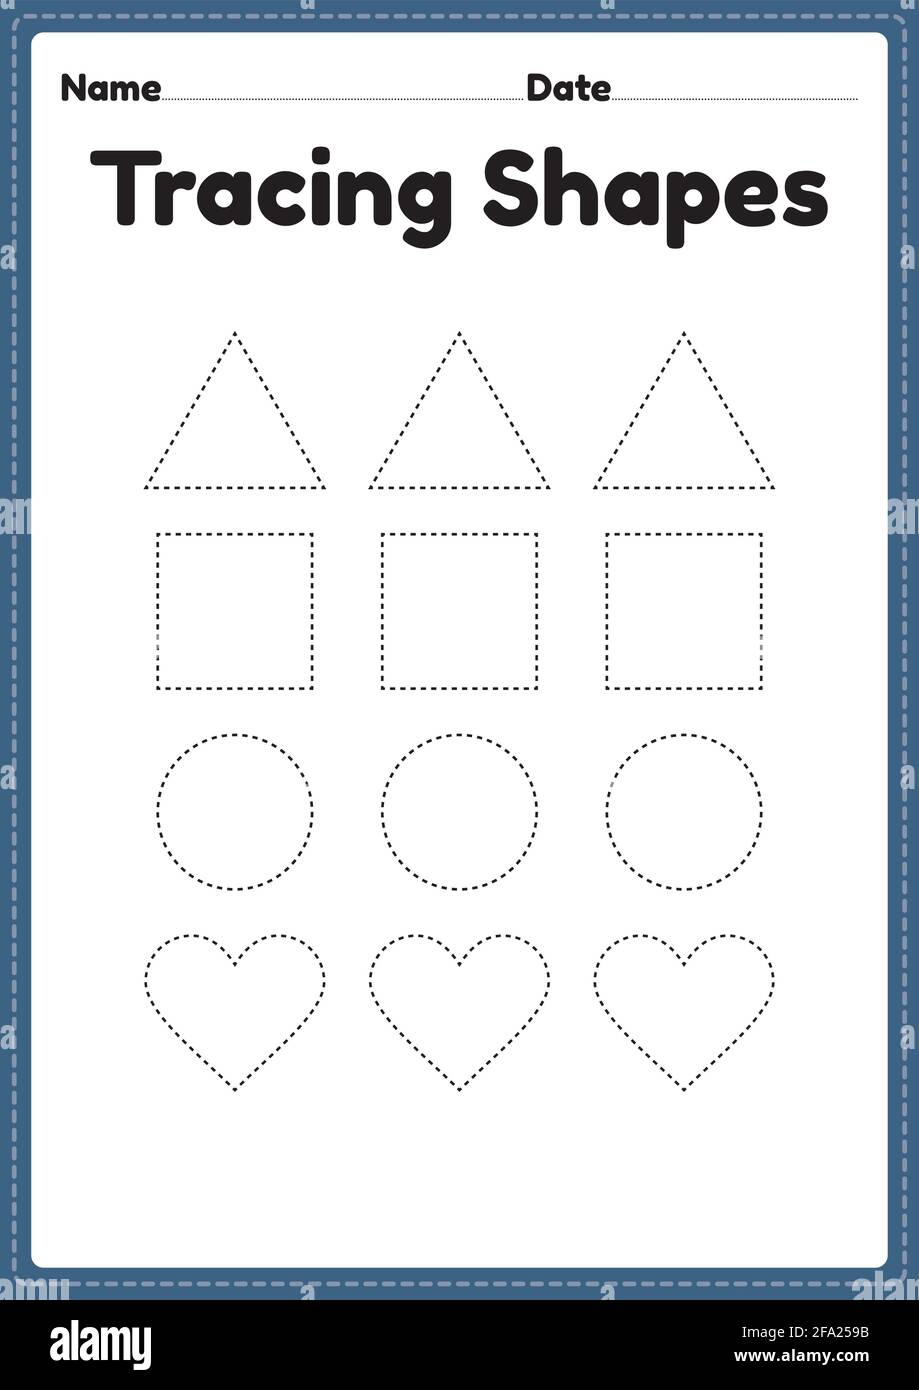 Tracing shapes worksheet for kindergarten and preschool kids for ...